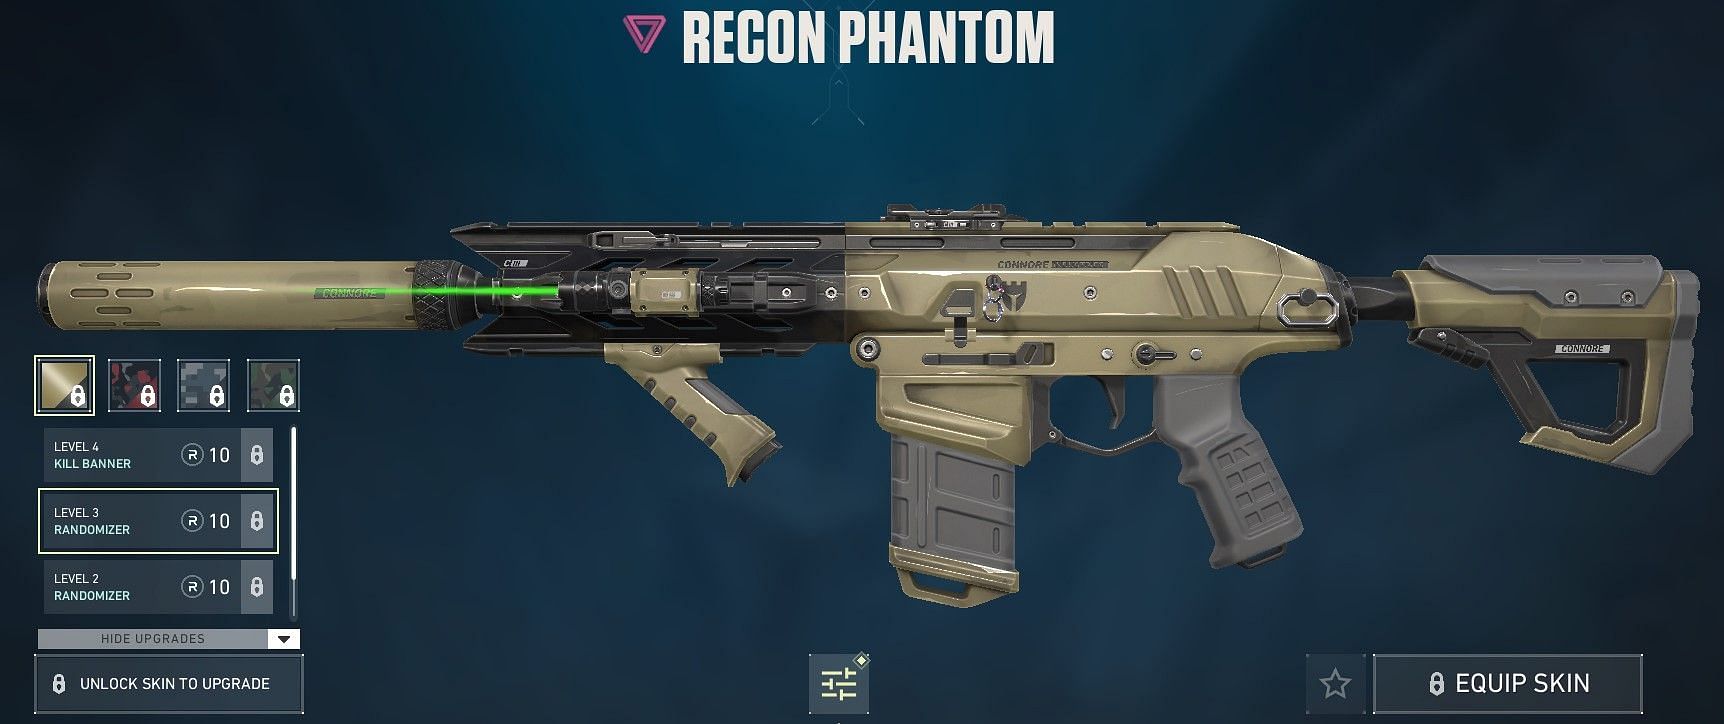 Recon Phantom (Image via Riot Games)